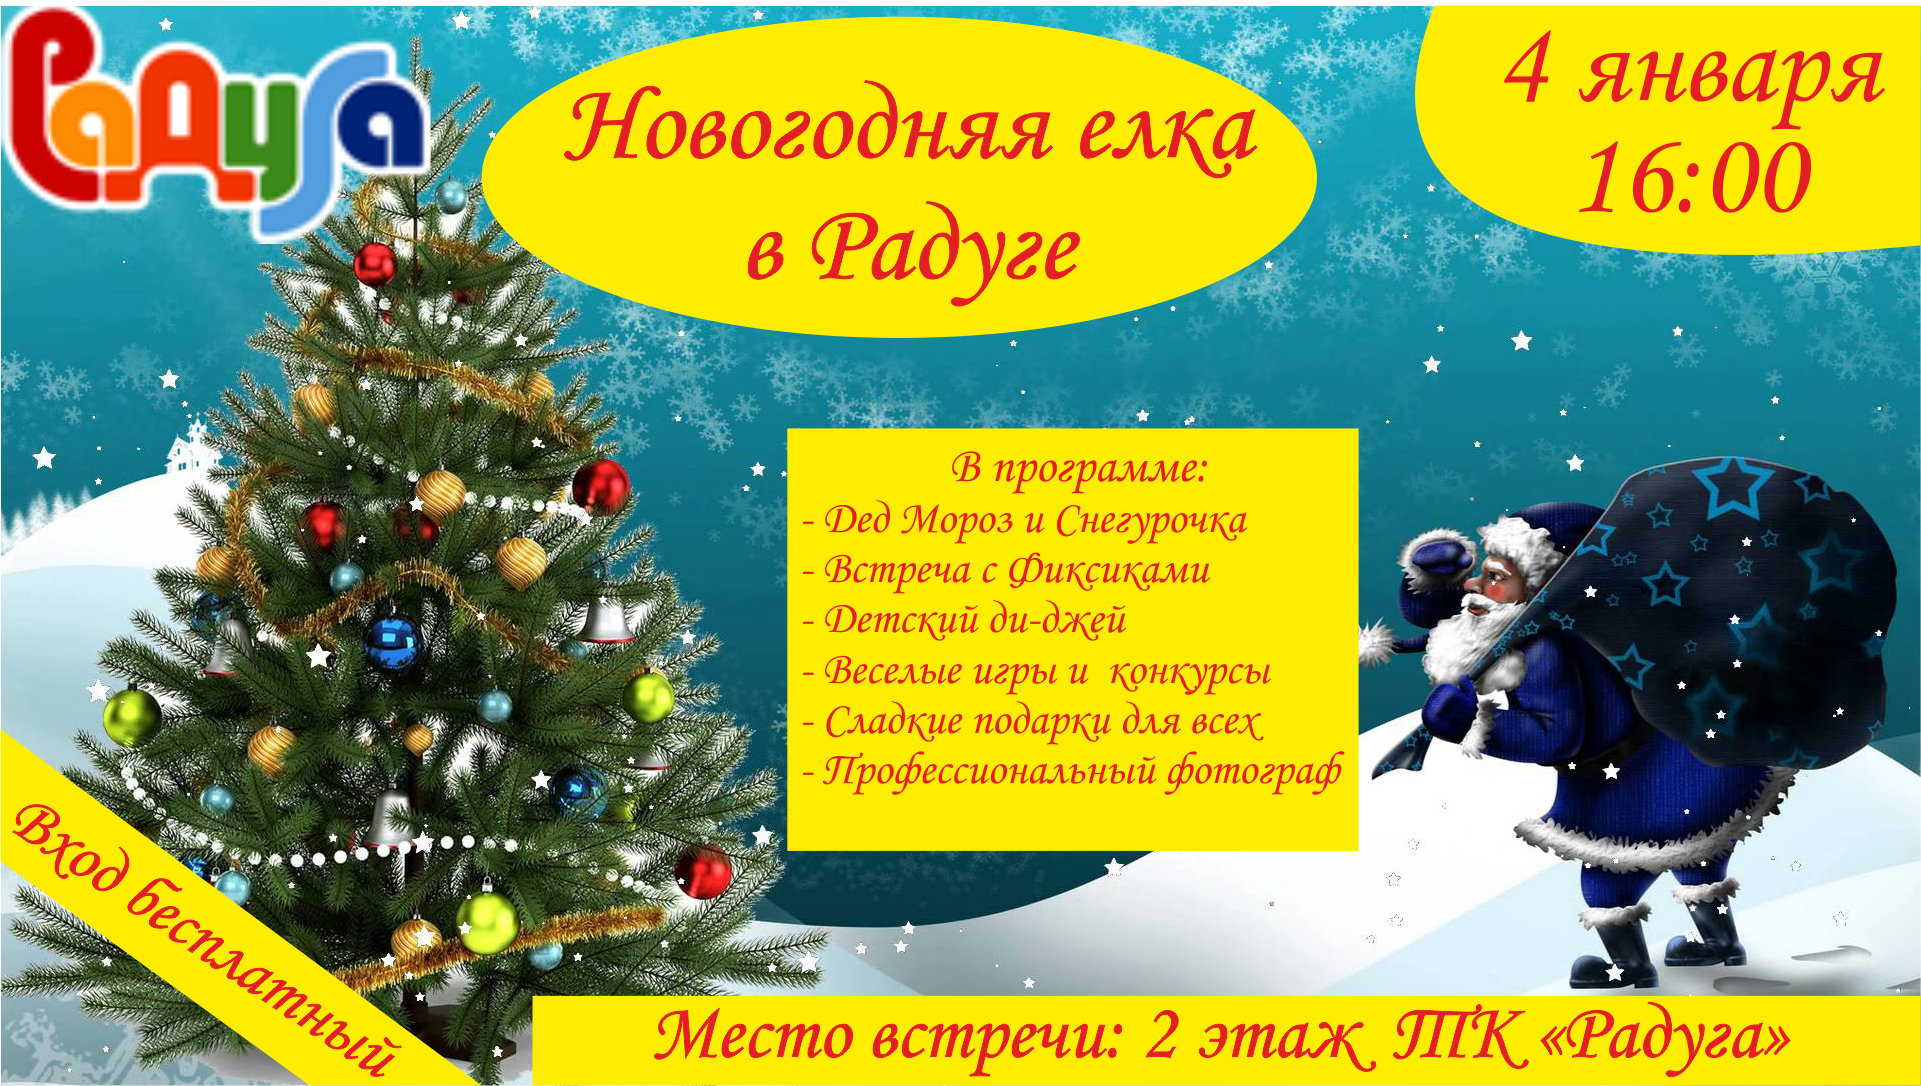 4 января в 16:00 приглашаем всех желающих Новогоднюю елку в ТК "Радуга"!